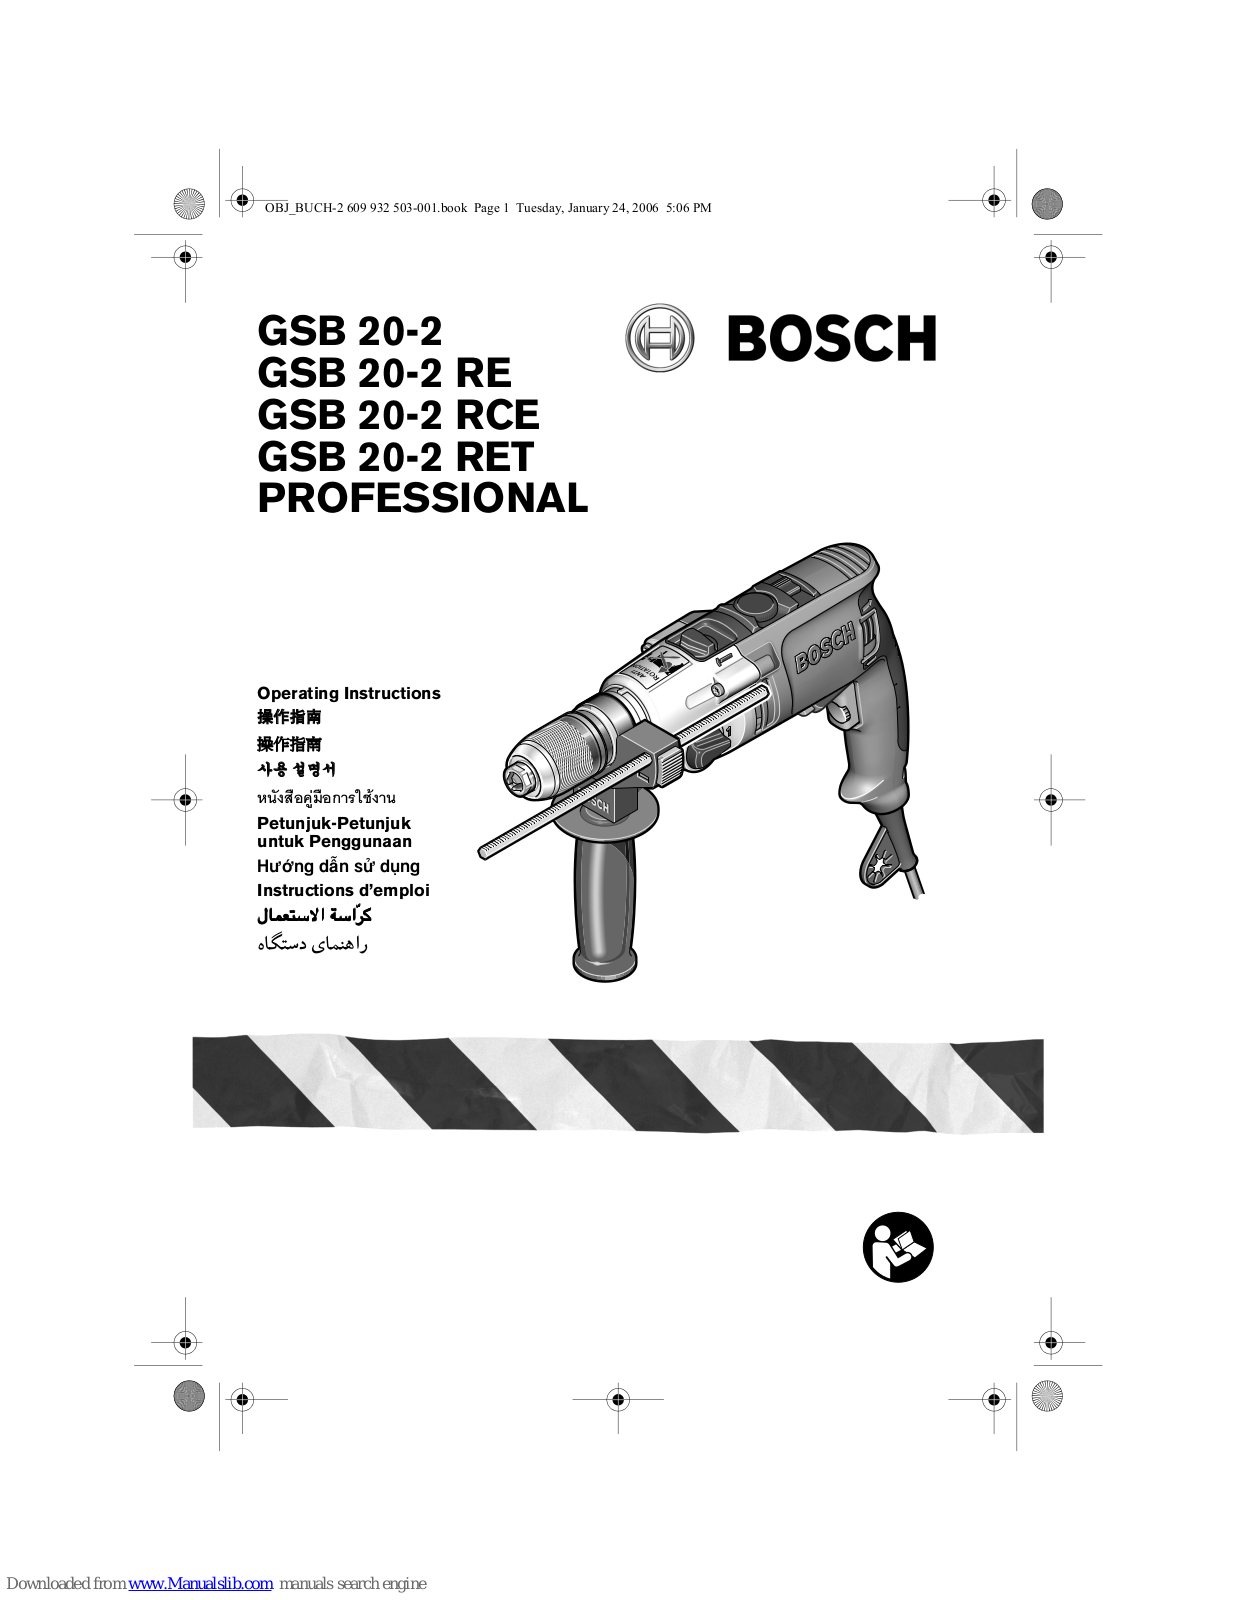 Bosch GSB 20-2 PROFESSIONAL, GSB 20-2 RE PROFESSIONAL, GSB 20-2 RCE PROFESSIONAL, GSB 20-2 RET PROFESSIONAL Operating Instructions Manual